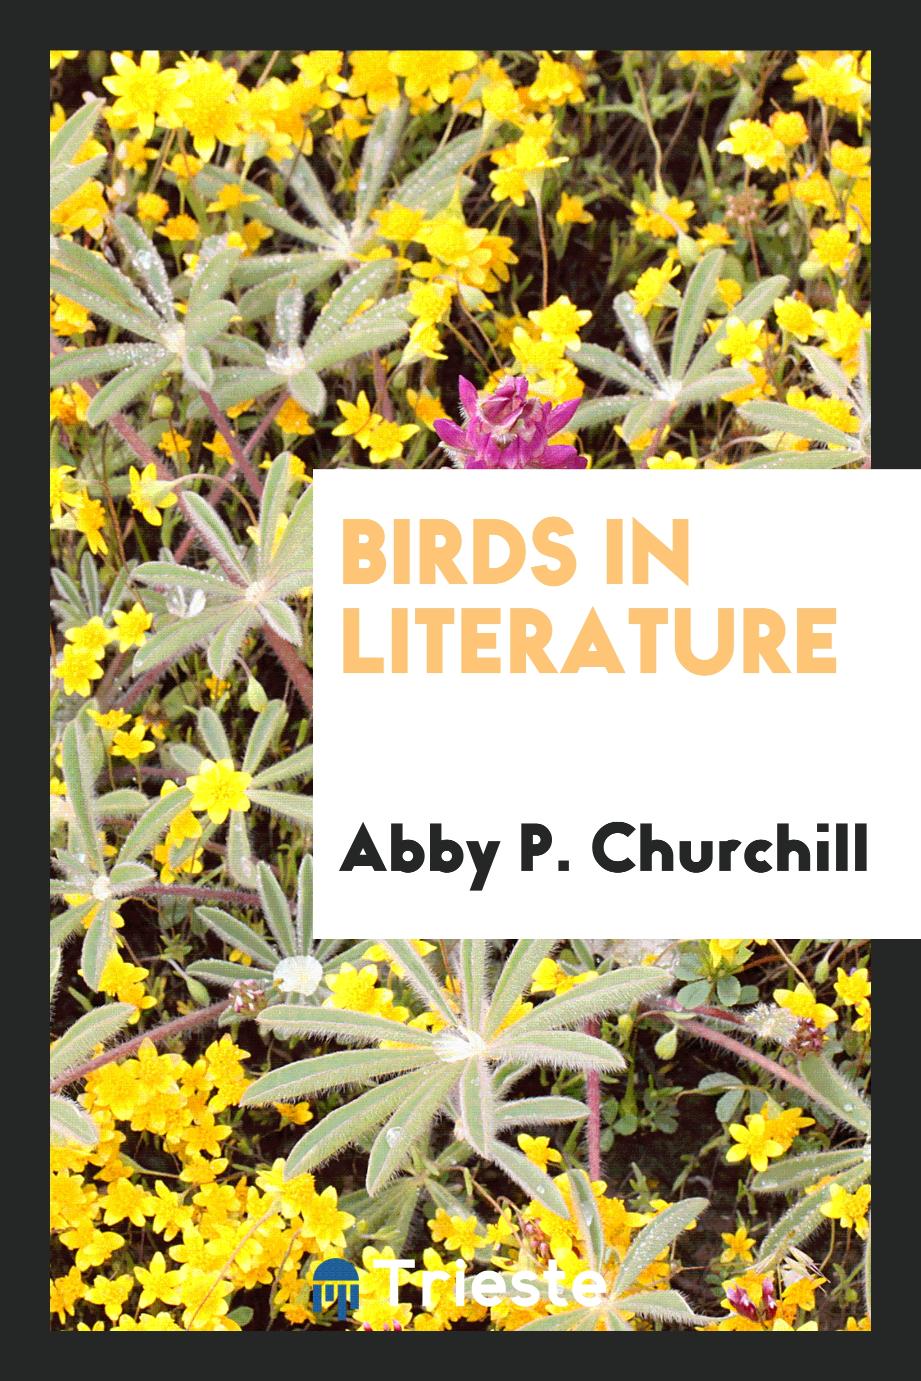 Birds in literature